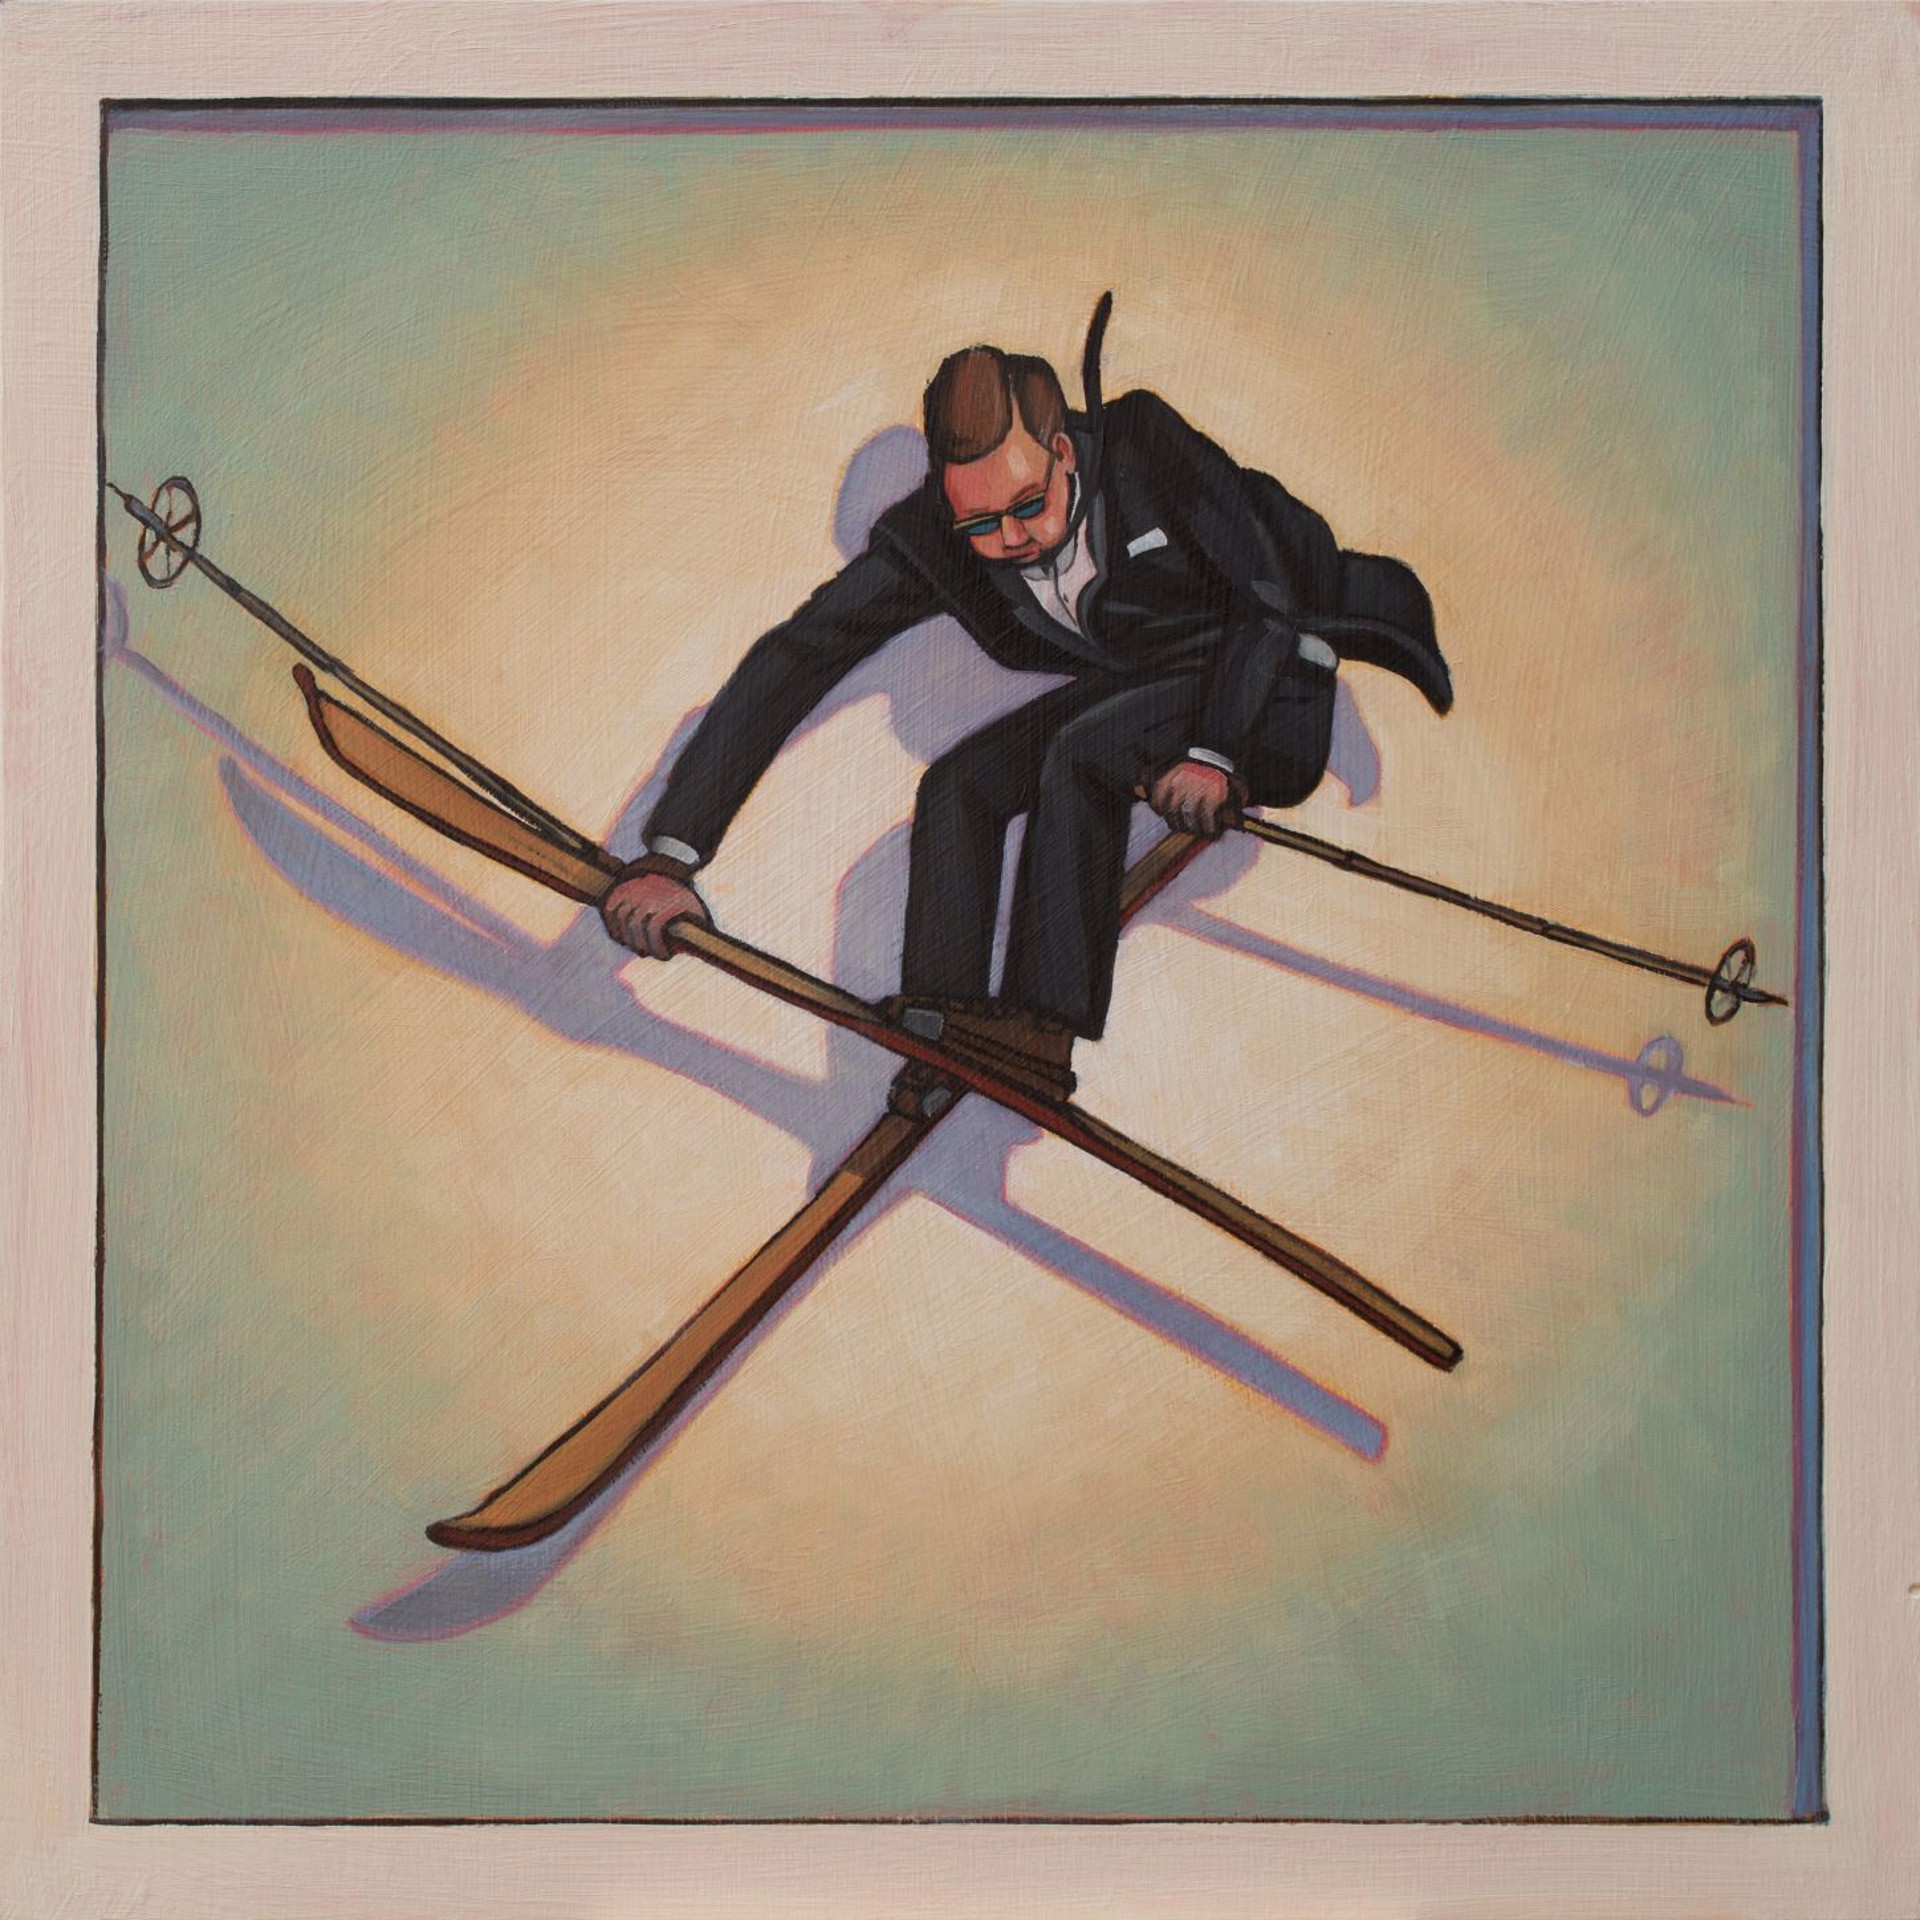 Skier 3 by MITCHELL FENTON